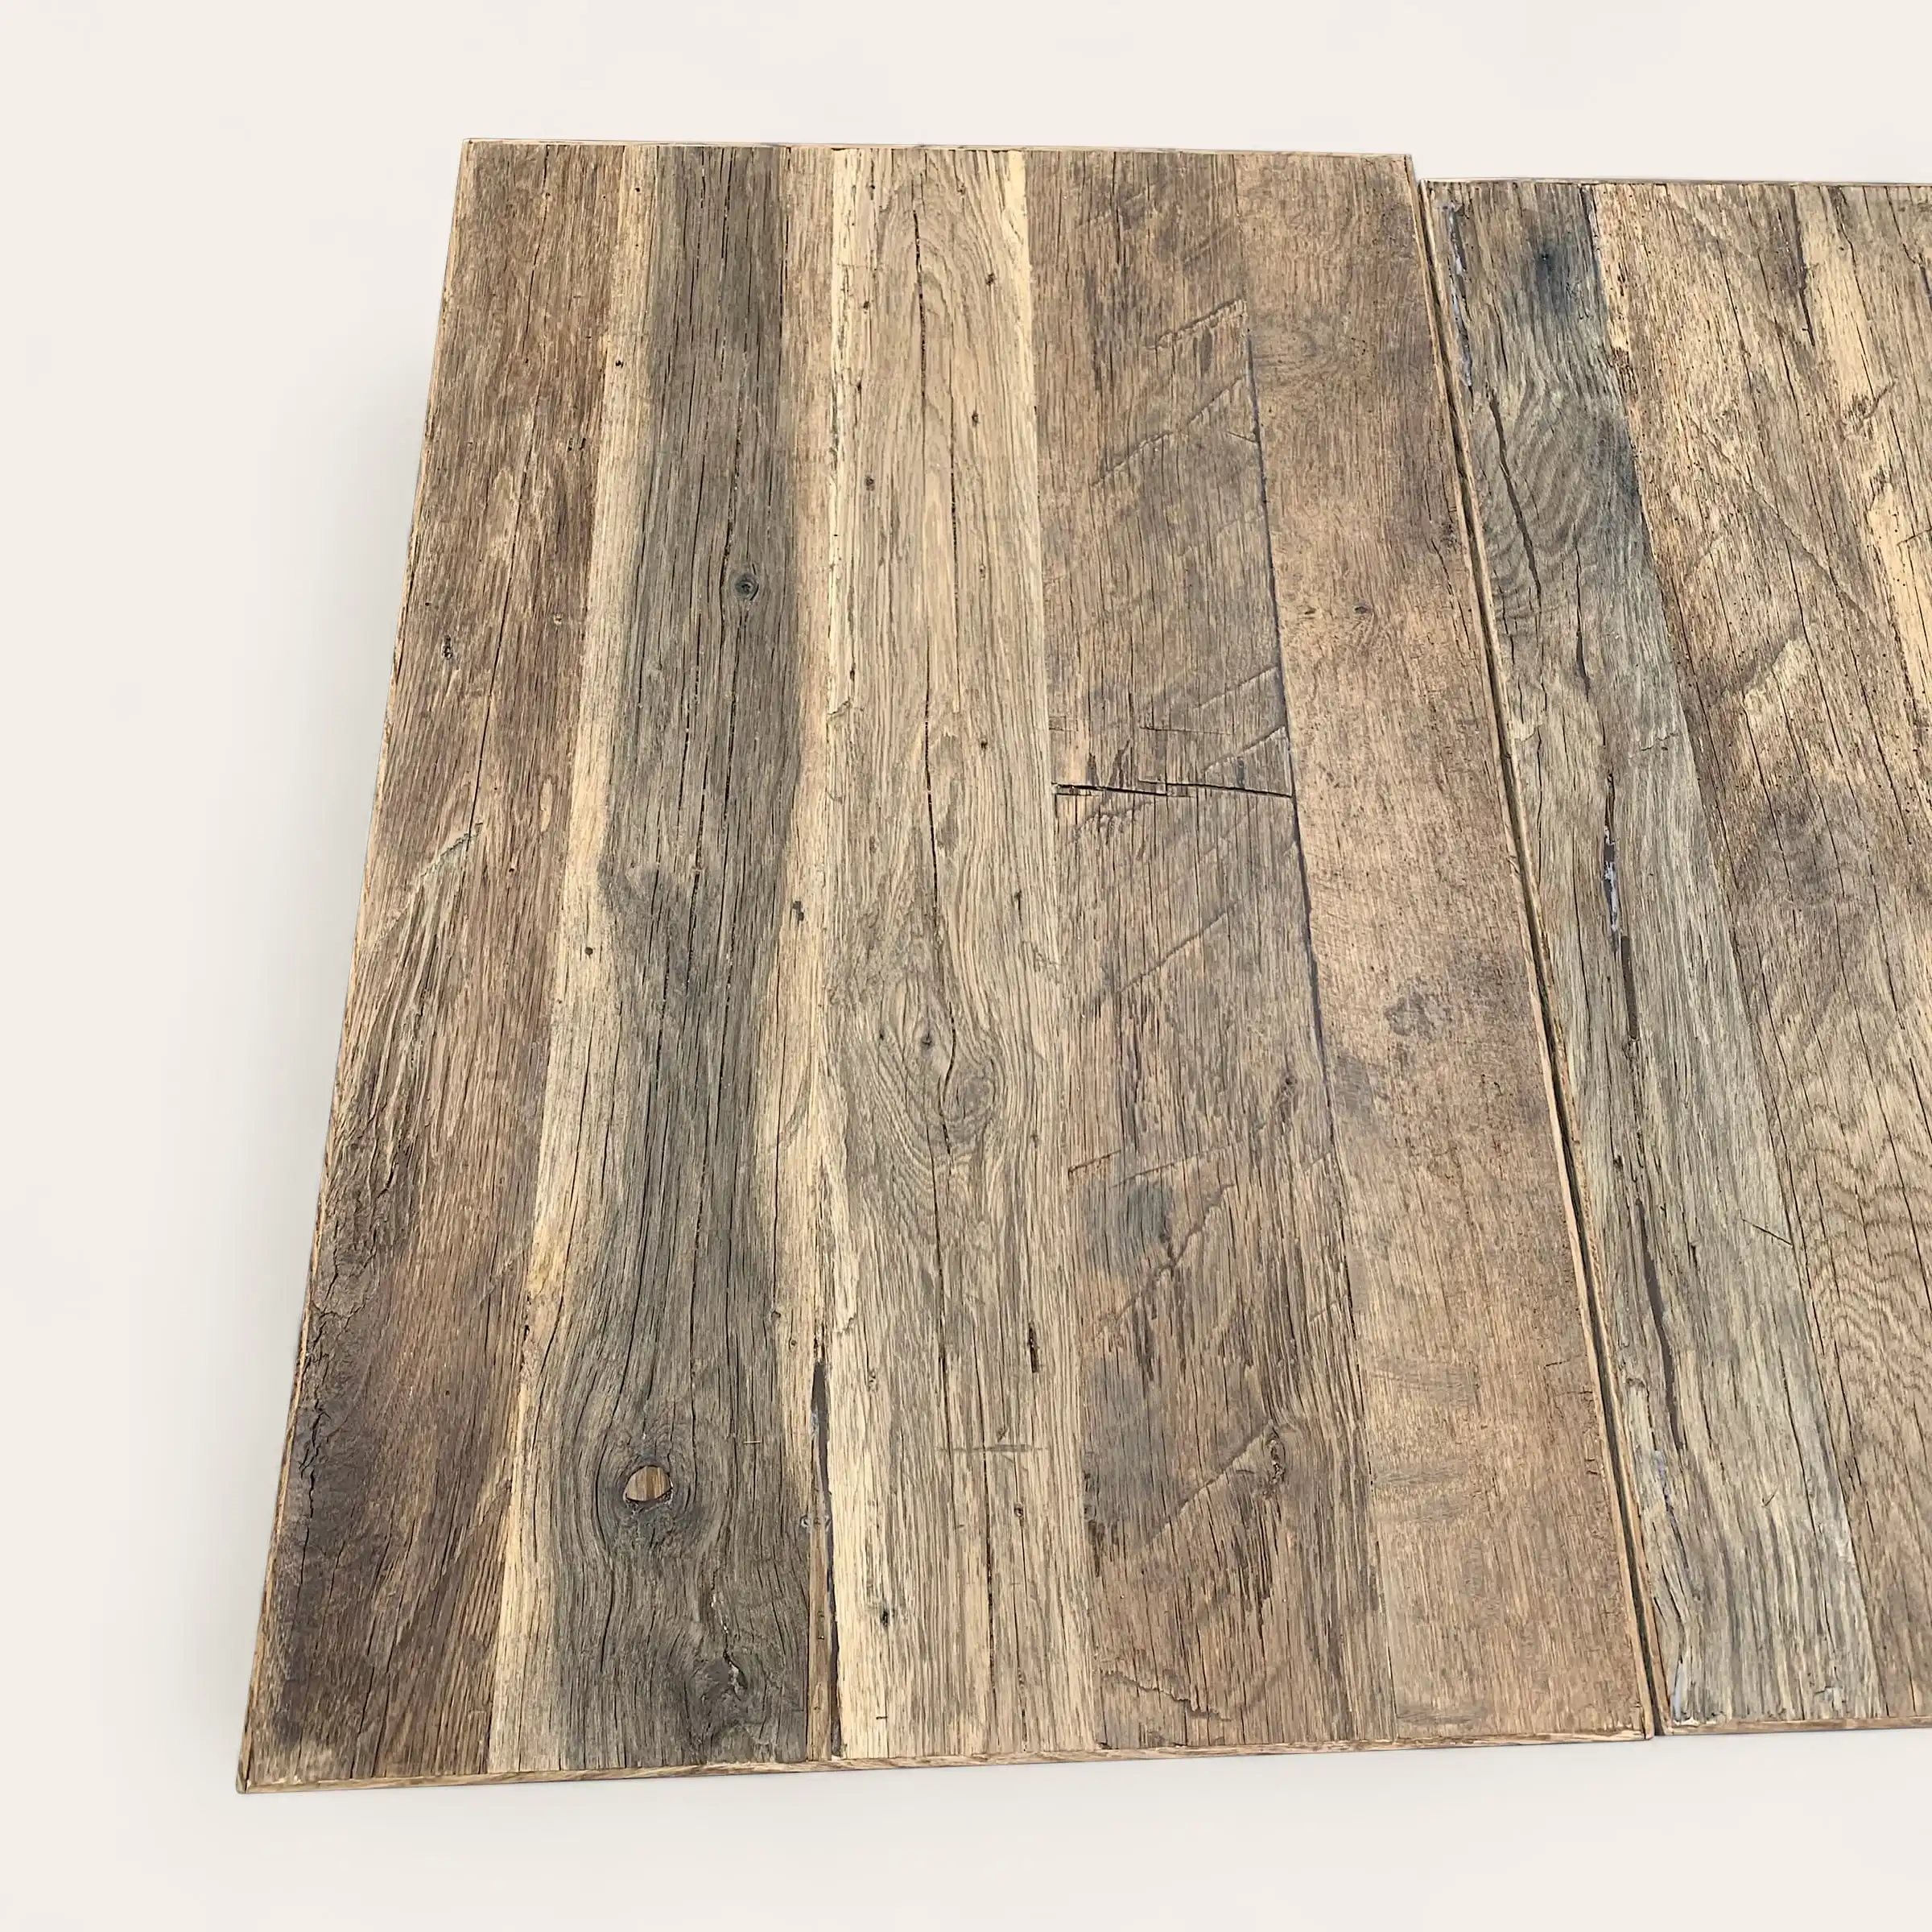  Trois planches de bois aux textures patinées et aux motifs de grains naturels, appelées « 3 plis vieux bois », sont alignées côte à côte sur un fond blanc. 